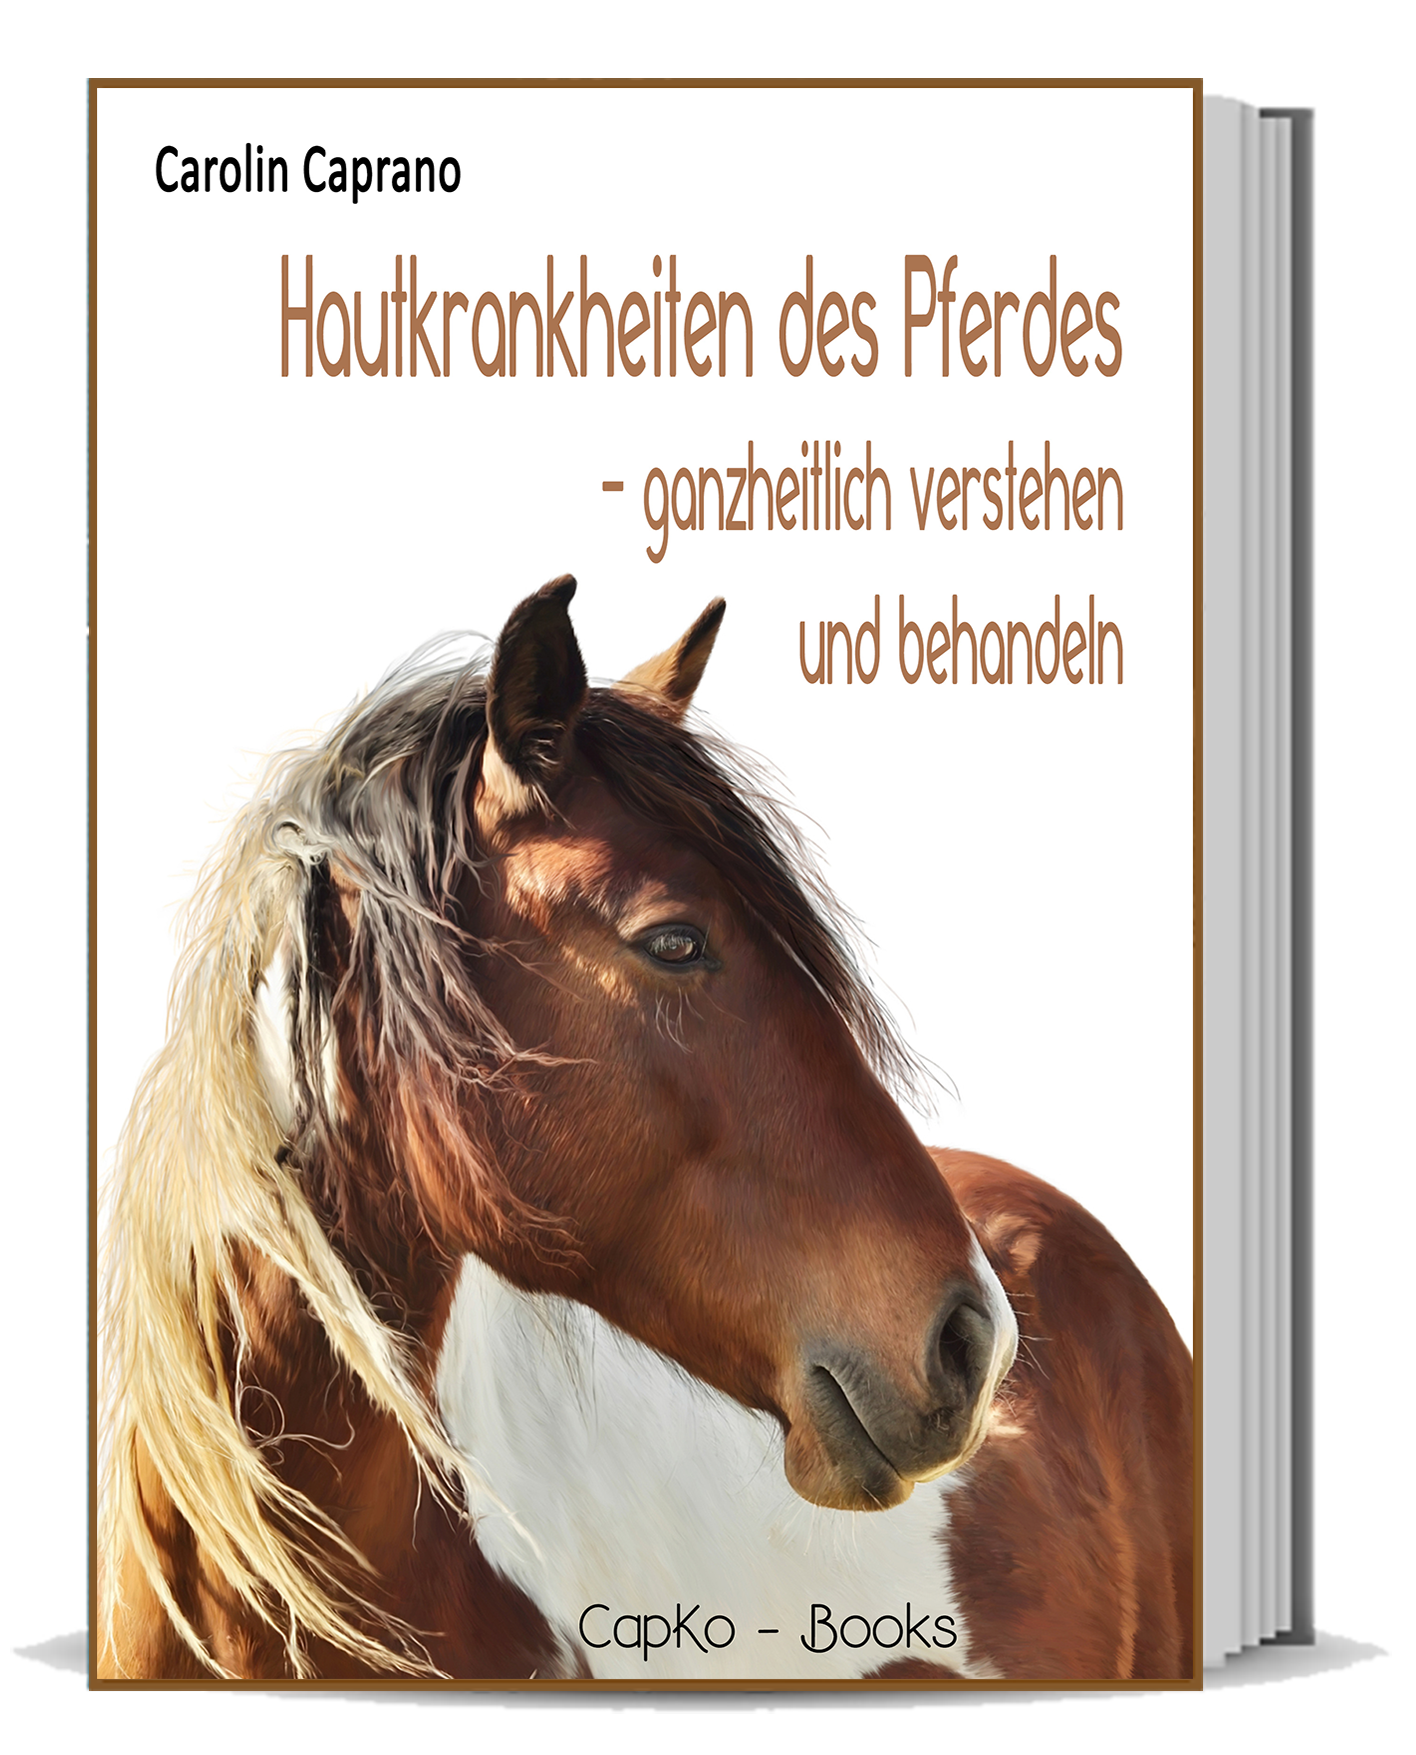 Hautkrankheiten des Pferdes - ganzheitlich verstehen und behandeln